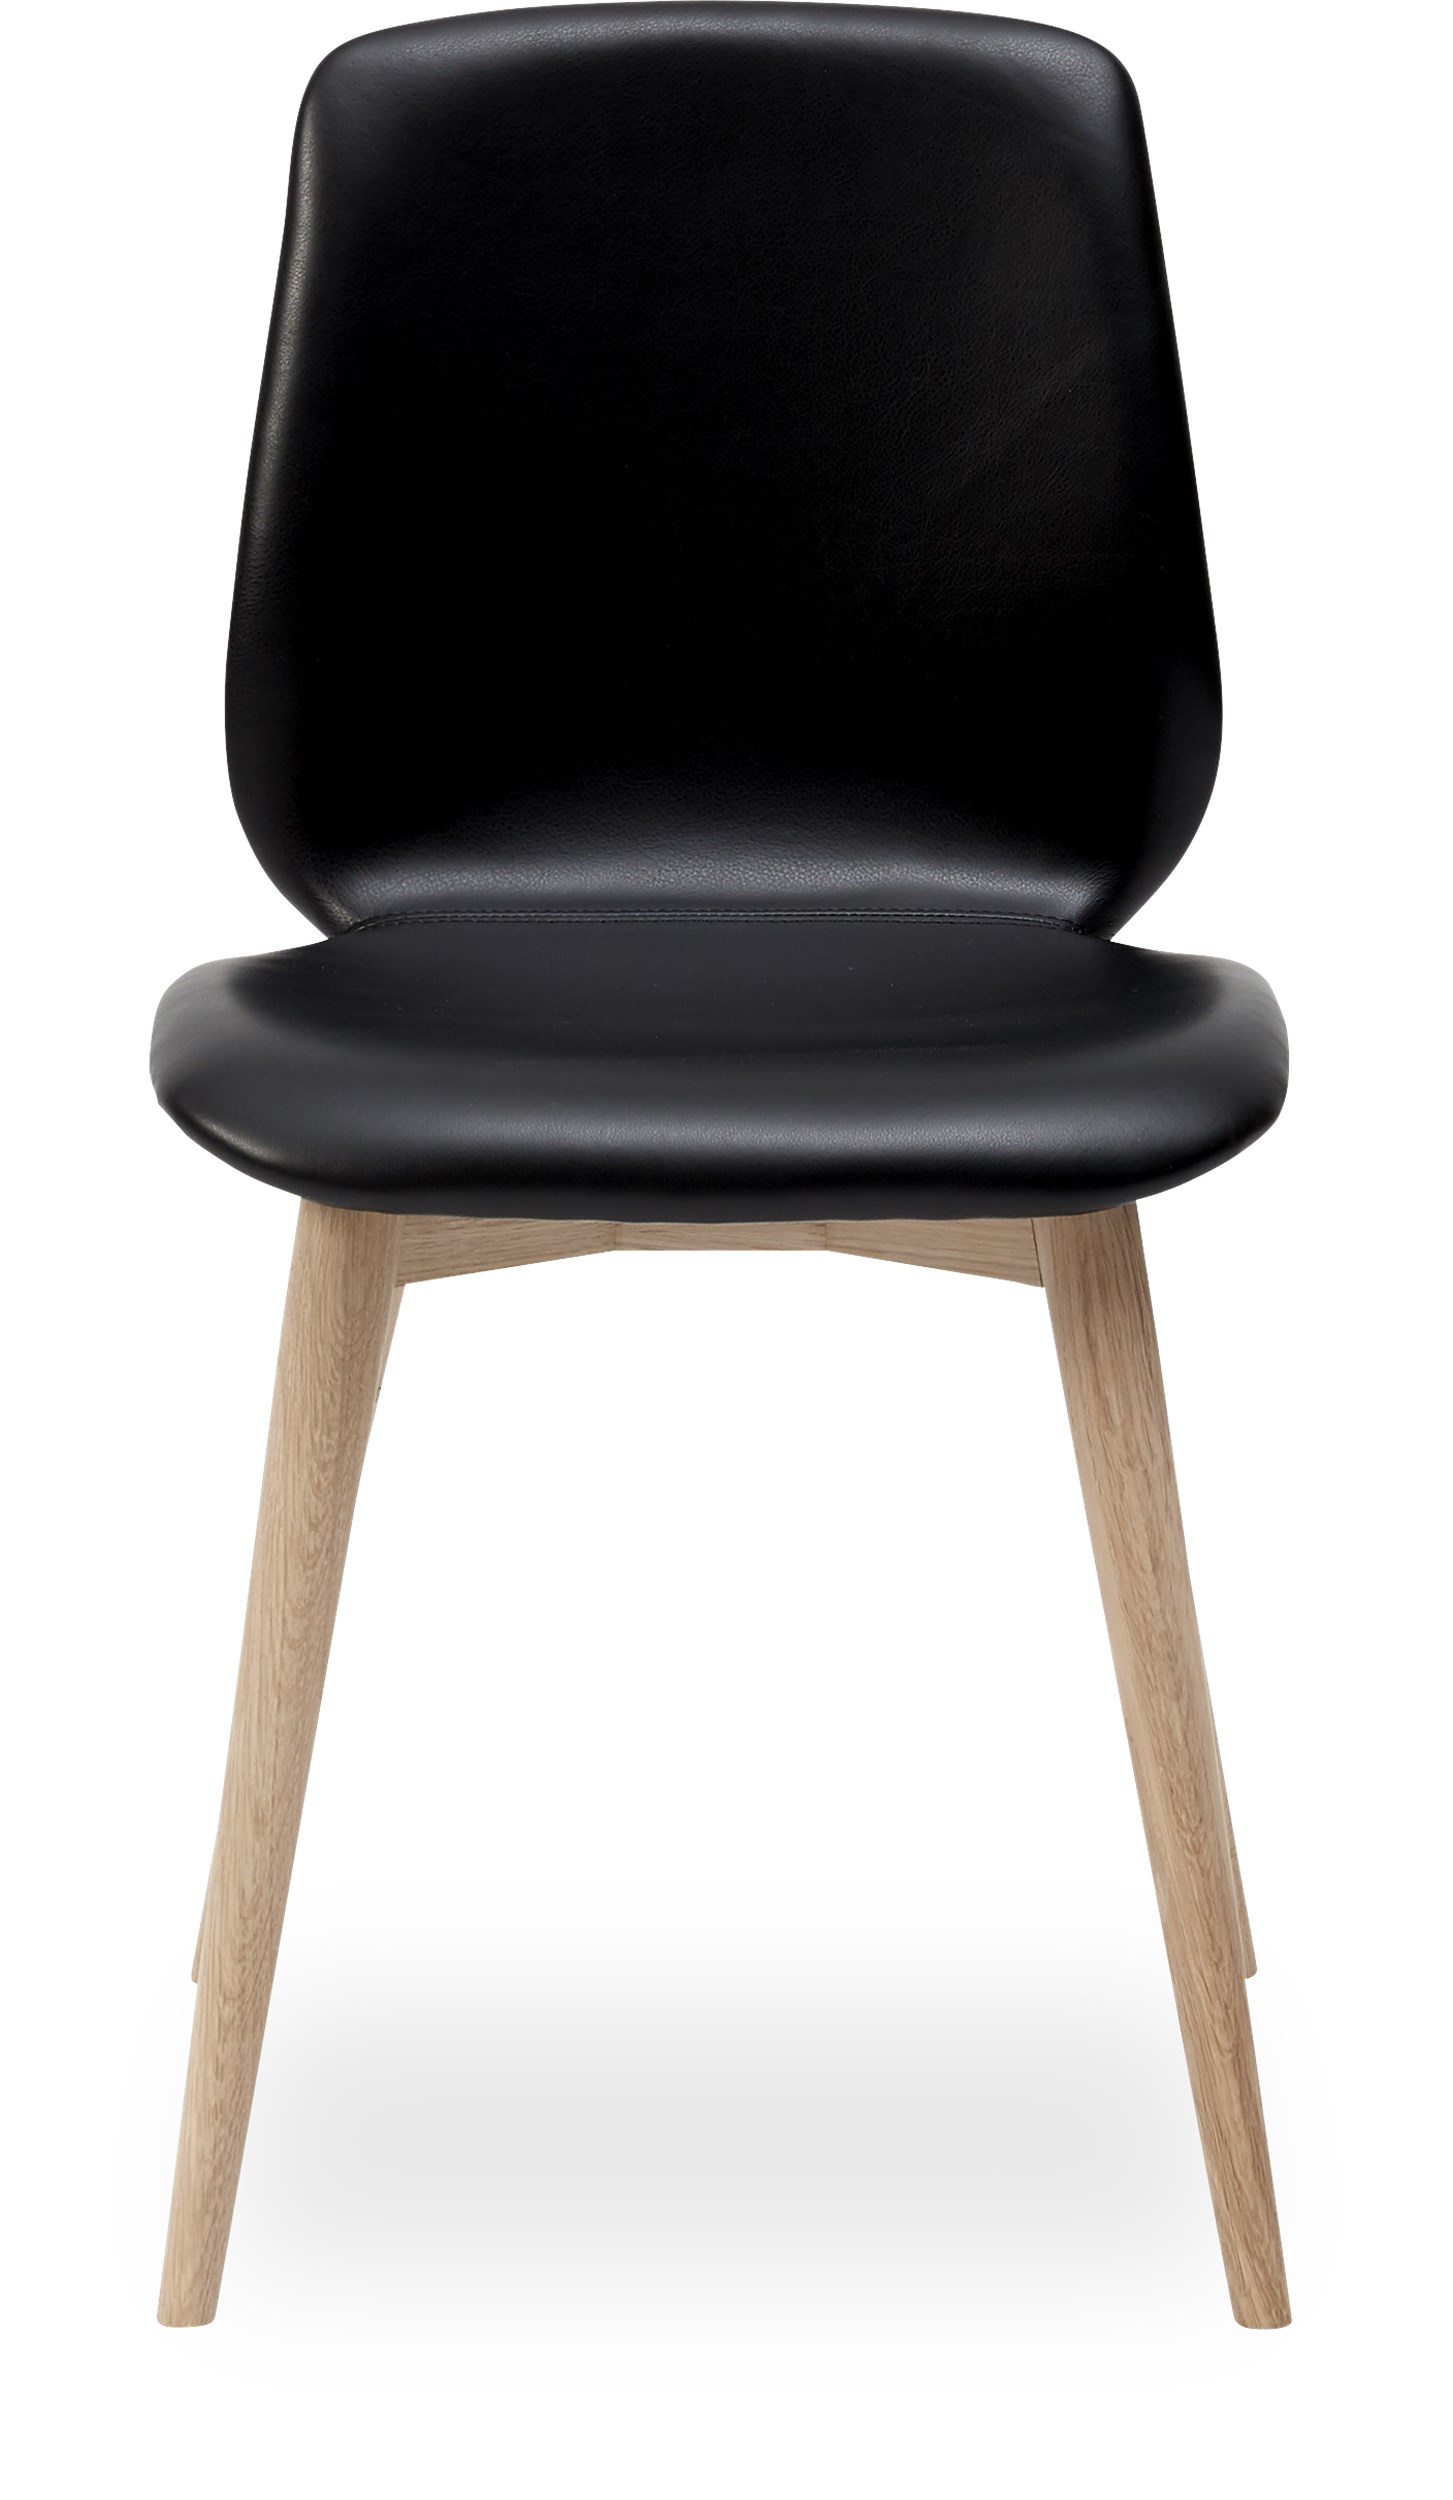 Share matstol - Sits 0100 svart läder och curveben i vitpigmenterad mattlackad ek